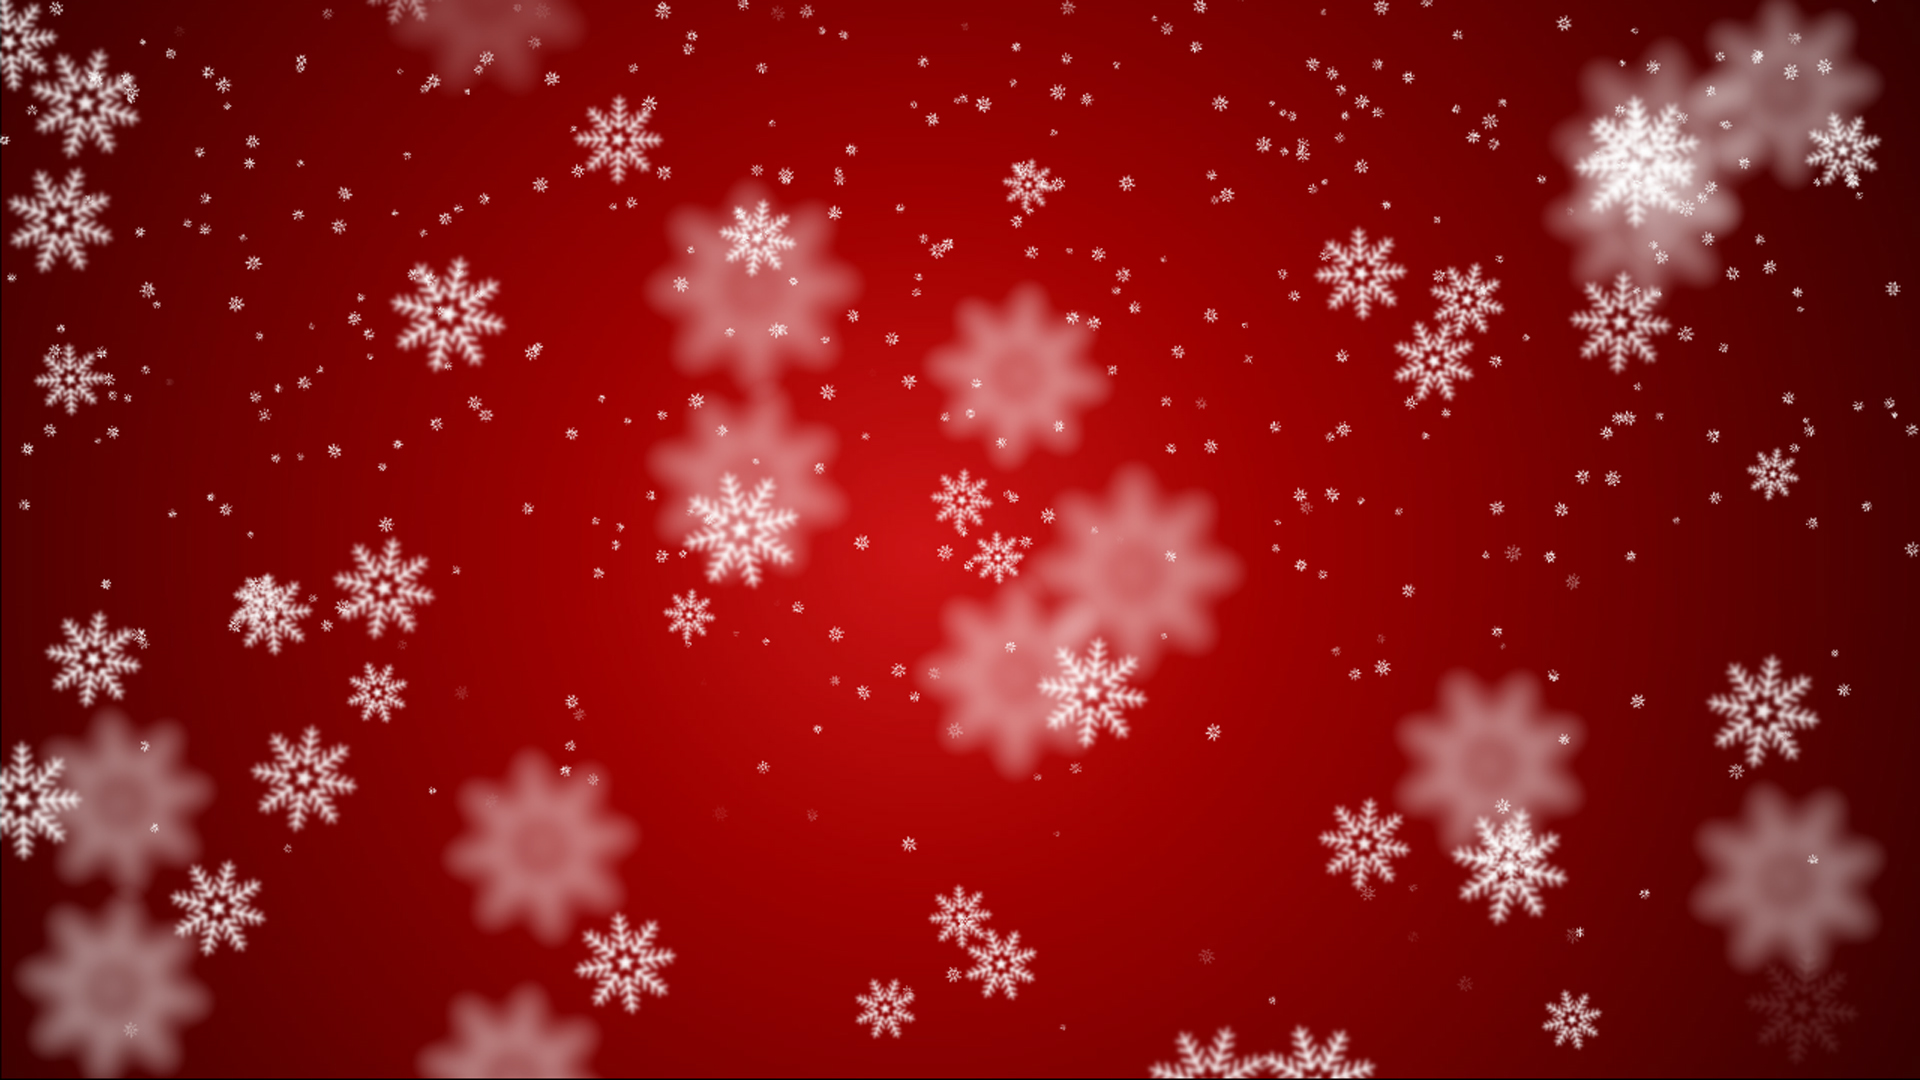 Ấm áp hơn với hình ảnh lễ hội, cây thông đèn LED hay những bông tuyết đầy phù hợp cho nền slide. Các tùy chọn vô vàn từ màu sắc đến những hình ảnh trang trí không thể thiếu trong các buổi home party. Chào đón Giáng Sinh sớm với xmas background!